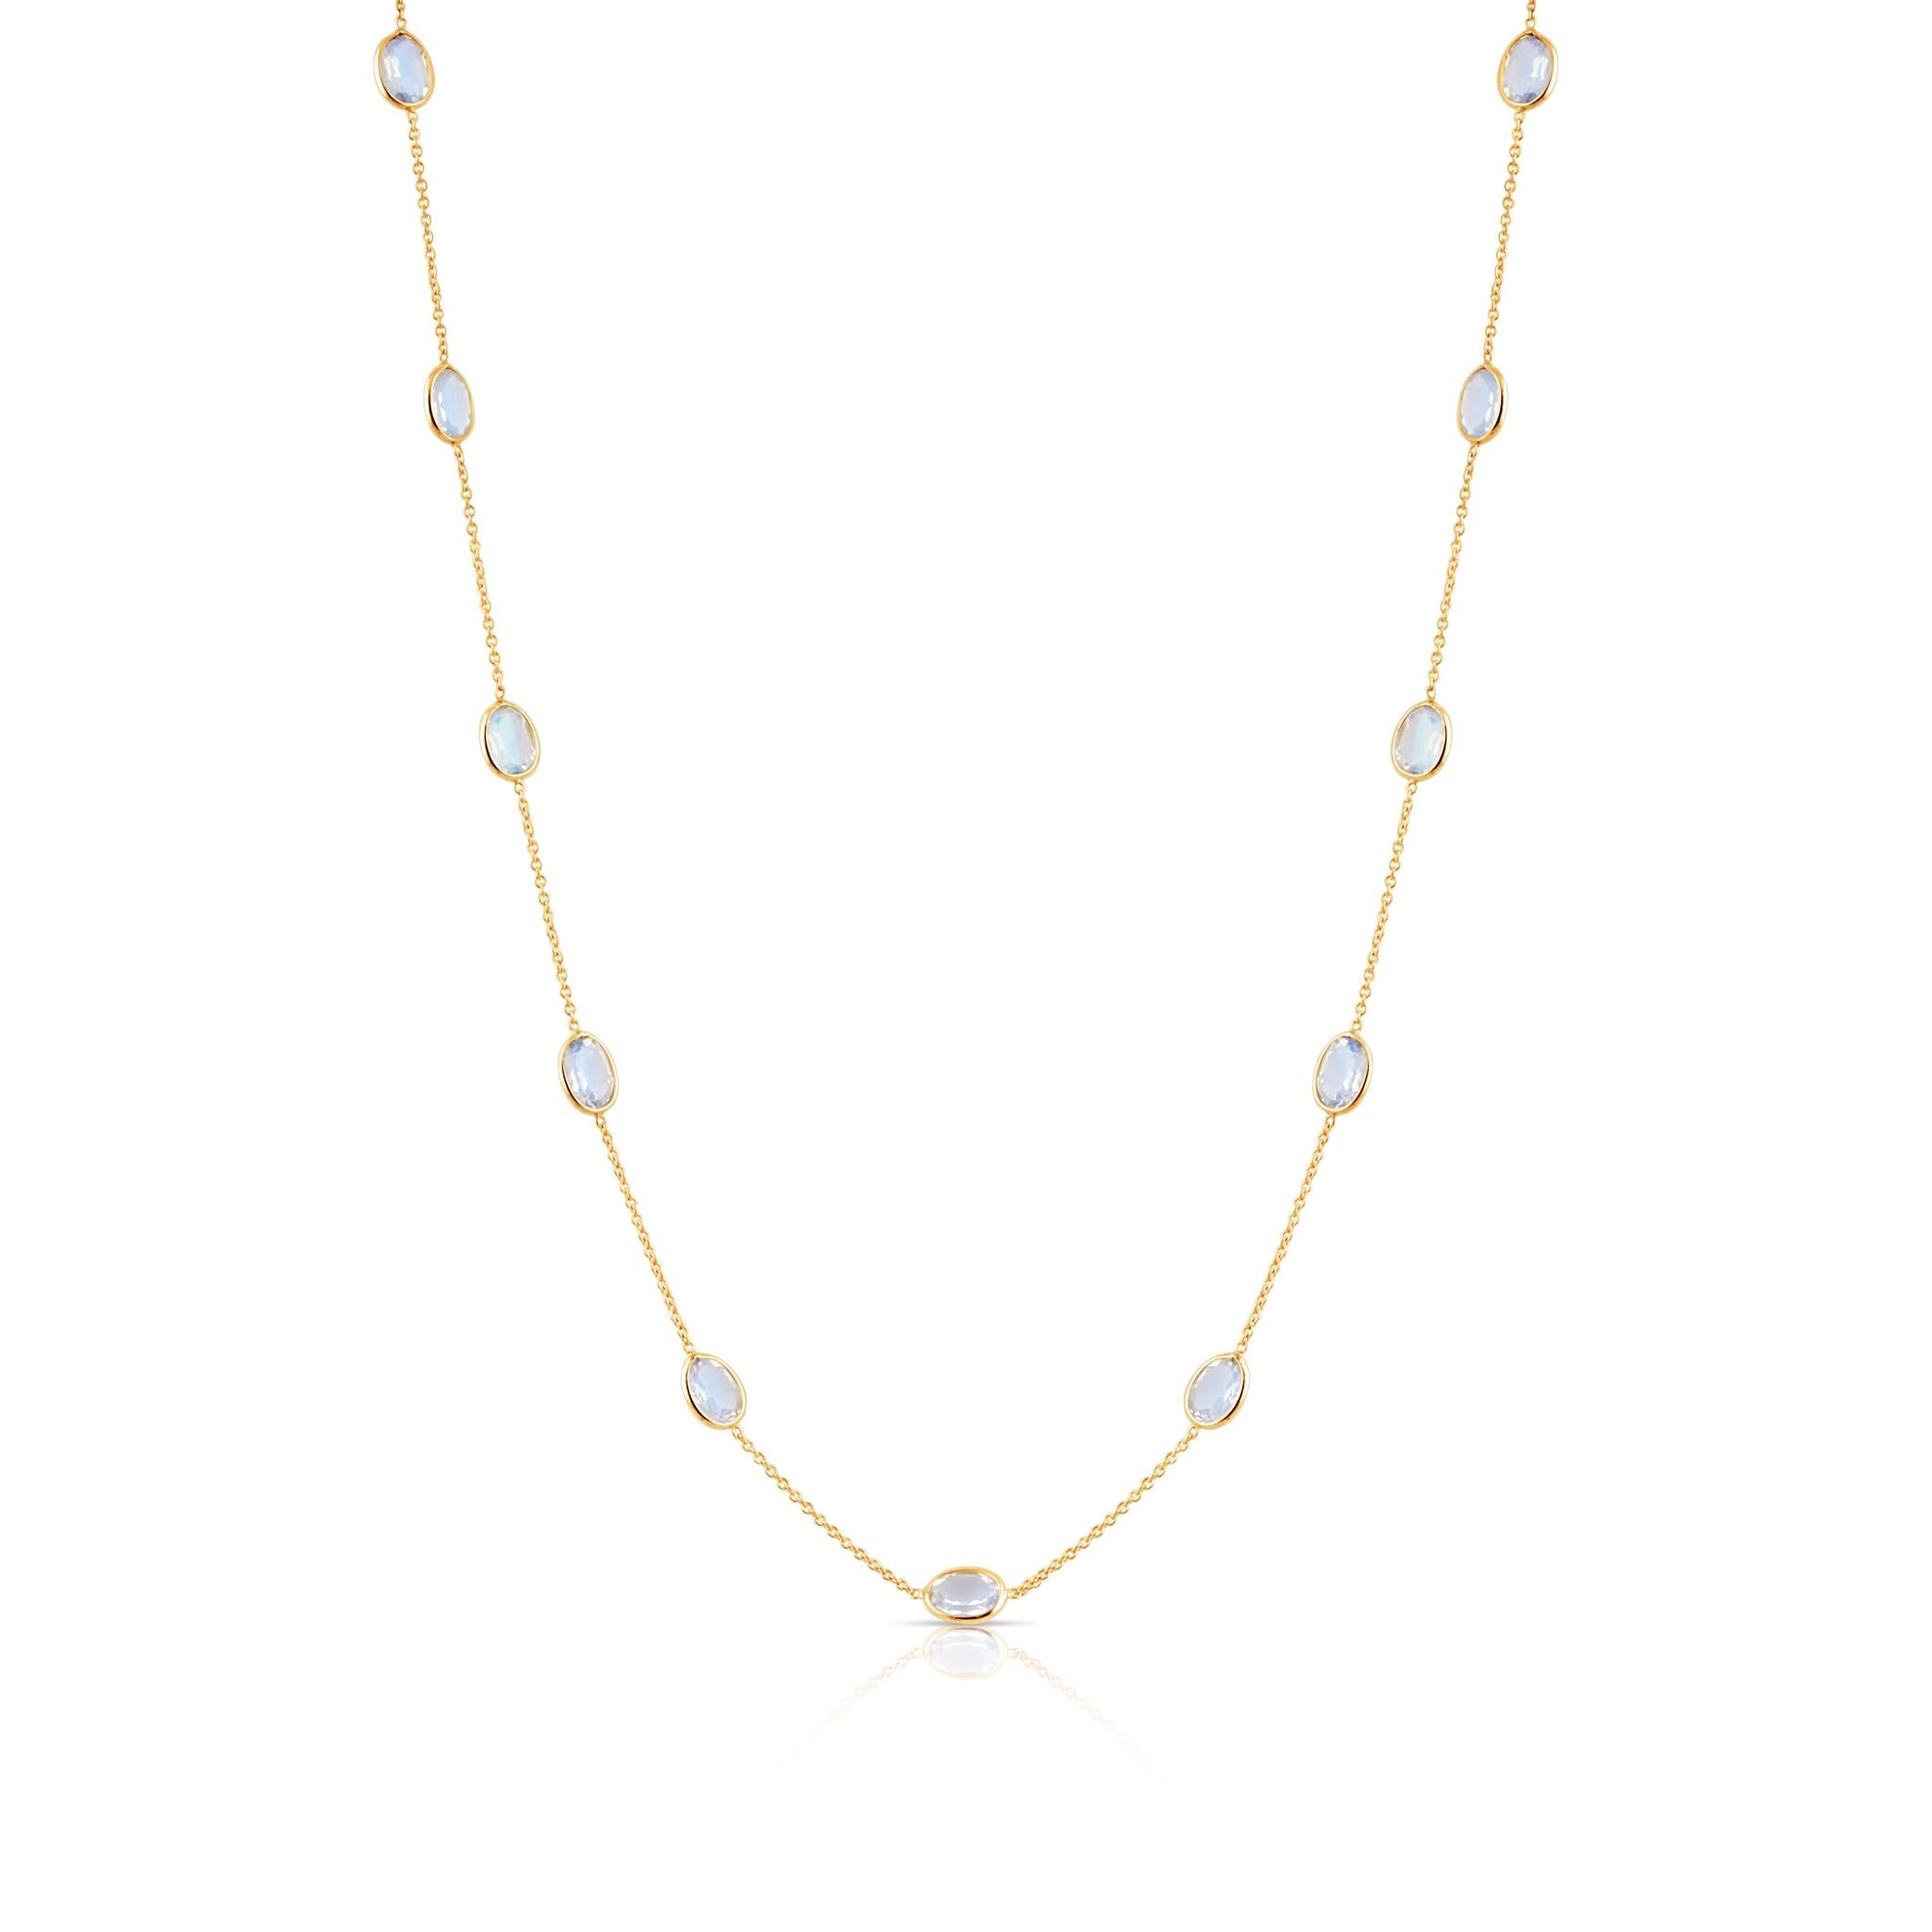 Das Tresor Beautiful Collier besteht aus 8.20 Karat Regenbogenmondstein. Die Halskette ist eine Ode an die luxuriöse und doch klassische Schönheit mit funkelnden Edelsteinen und femininen Farbtönen. Ihr zeitgemäßes und modernes Design macht sie